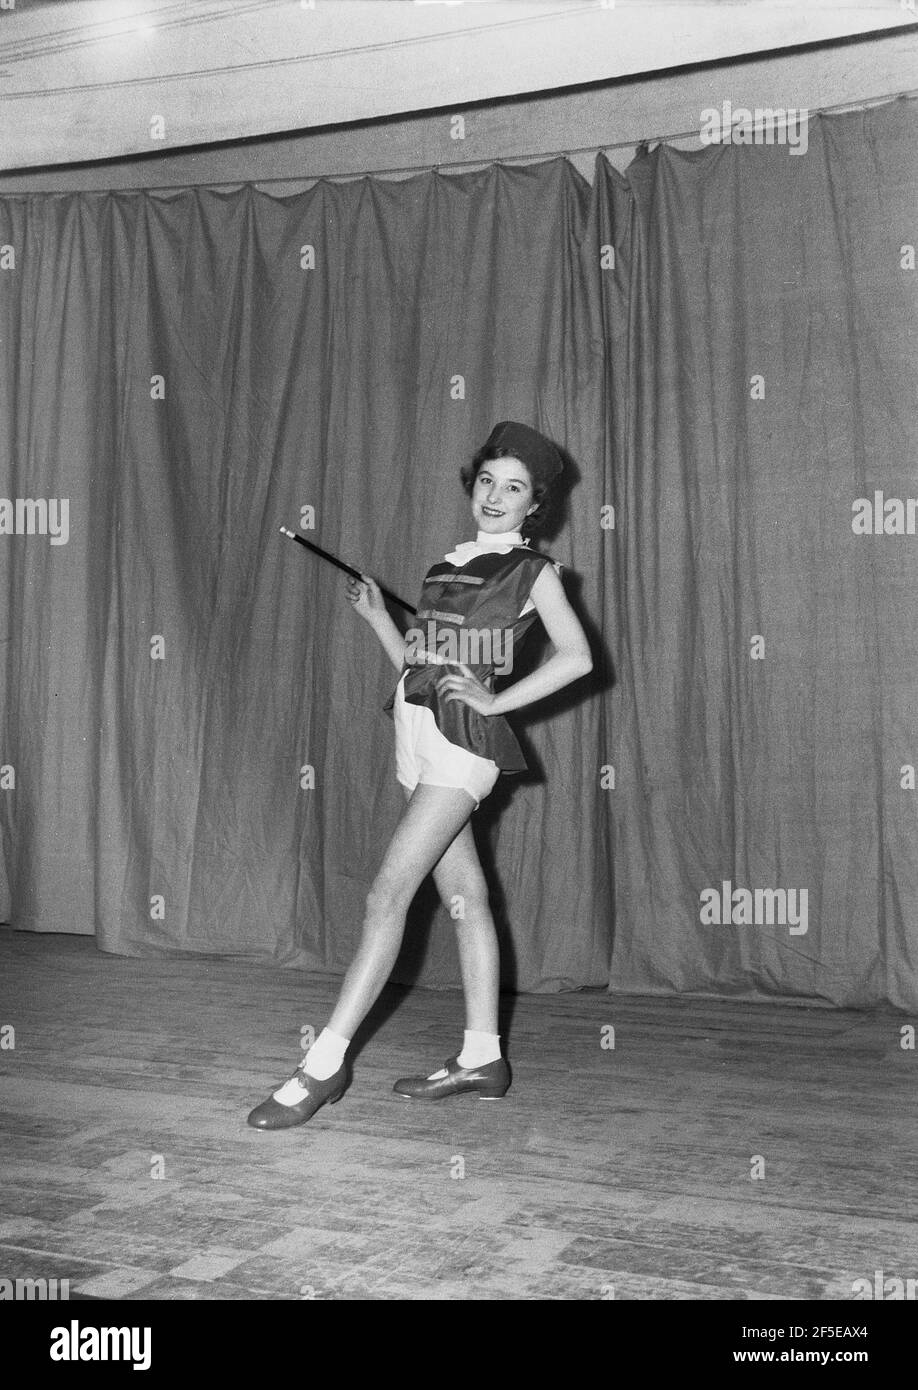 1954, historique, sur une scène devant le rideau portant son costume et avec le bâton, une jeune danseuse posant pour une photo avant de se présenter dans le pantomime, 'Mother Goose', Angleterre, Royaume-Uni. À l'origine, l'auteur imaginaire d'une collection de contes de fées français et plus tard de comptines anglaises populaires, il est dit que le personnage est apparu pour la première fois en 1806 comme la performance, 'Arlequin et mère Goose ou l'oeuf d'or'. Les différentes adaptations pantomime de l'histoire de la mère Goose ont eu lieu aux XIXe et XXe siècles et il est resté un spectacle de divertissement familial populaire depuis. Banque D'Images